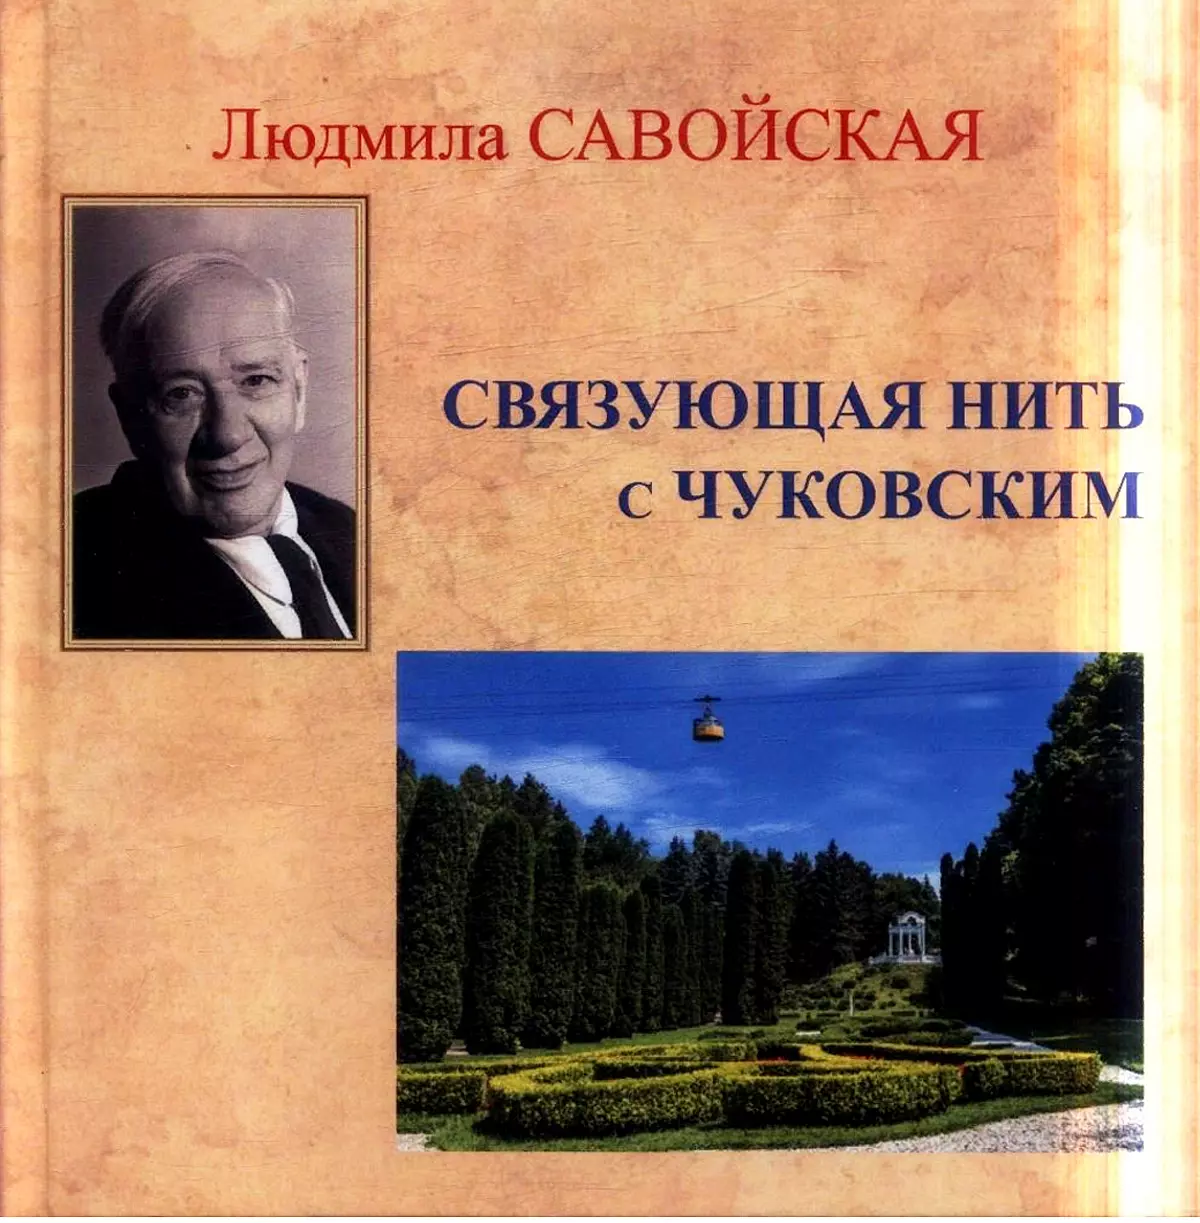 Новинка: книга о Кисловодске, его истории, жителях  и деятелях культуры на курорте